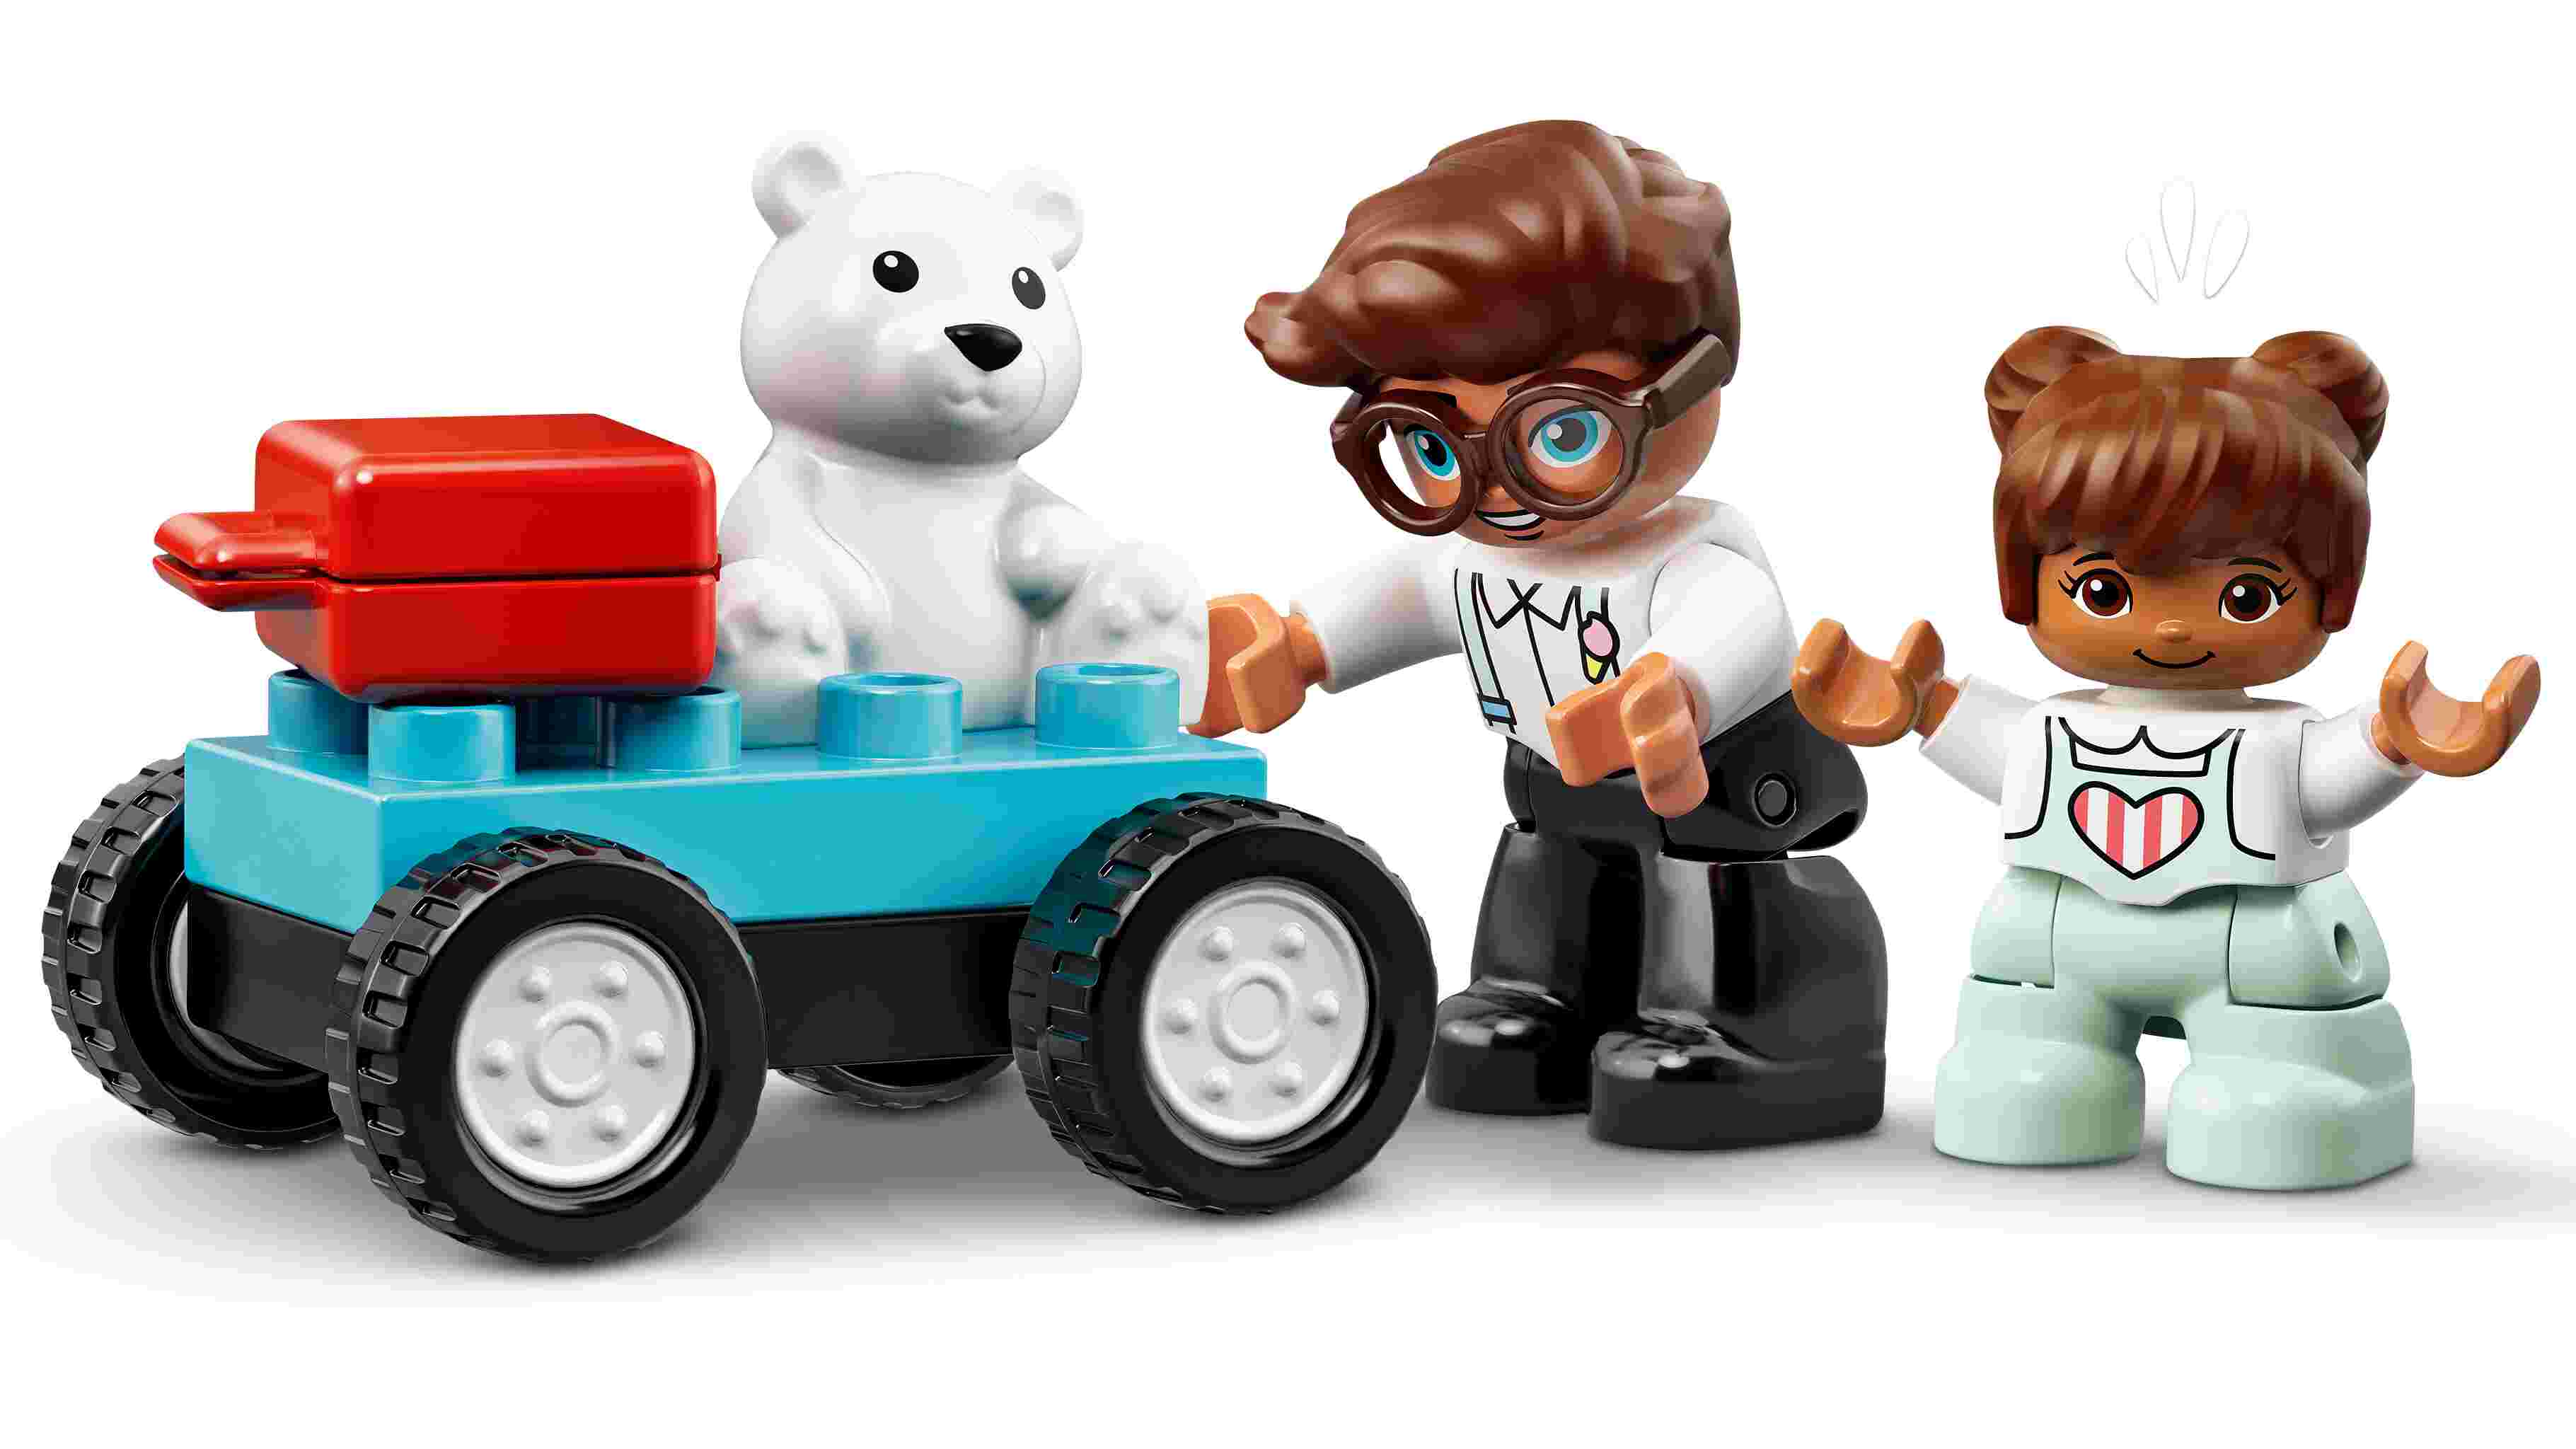 LEGO 10961 DUPLO Flugzeug und Flughafen Spielzeug Set für ab 2 Jahren